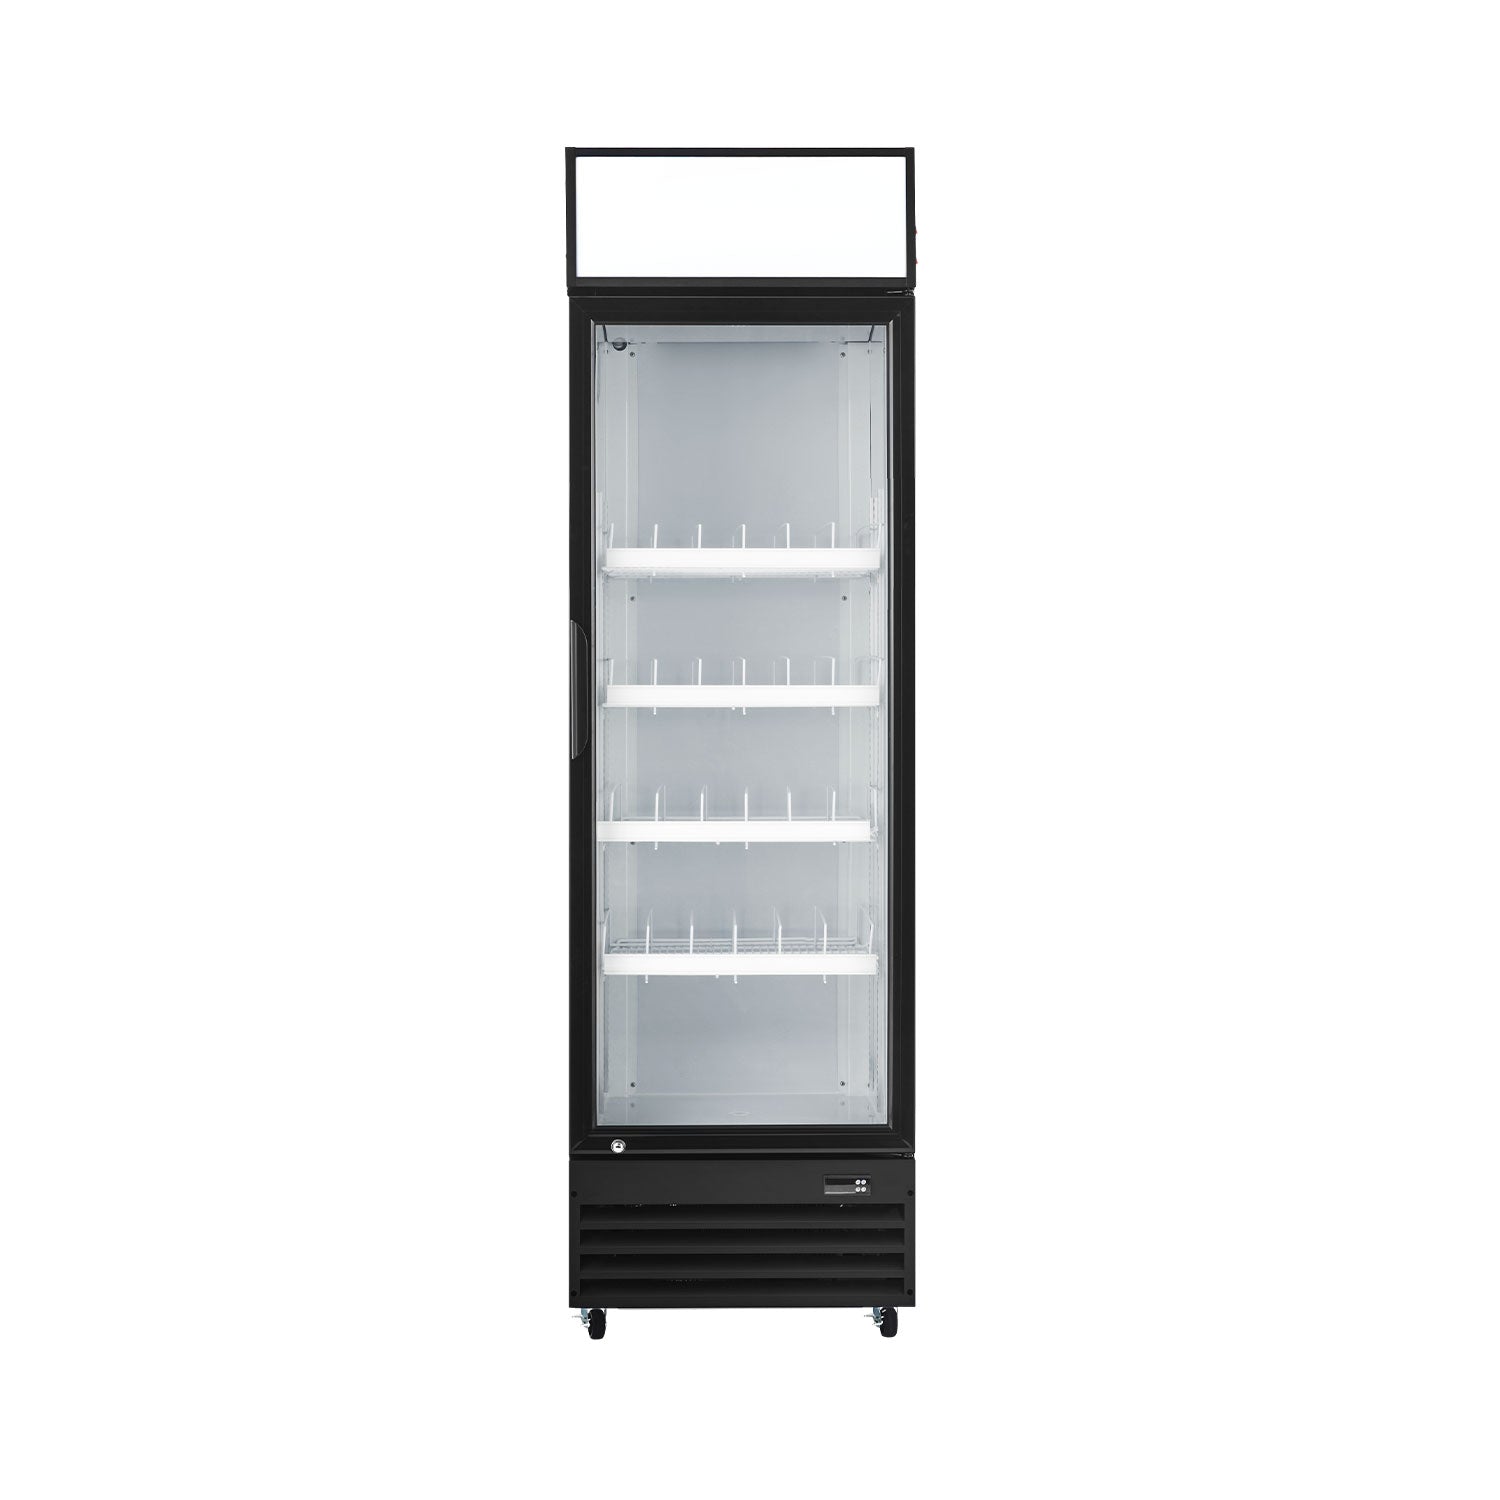 Buy Wilprep 22.8-inch Single Door Commercial Refrigerator